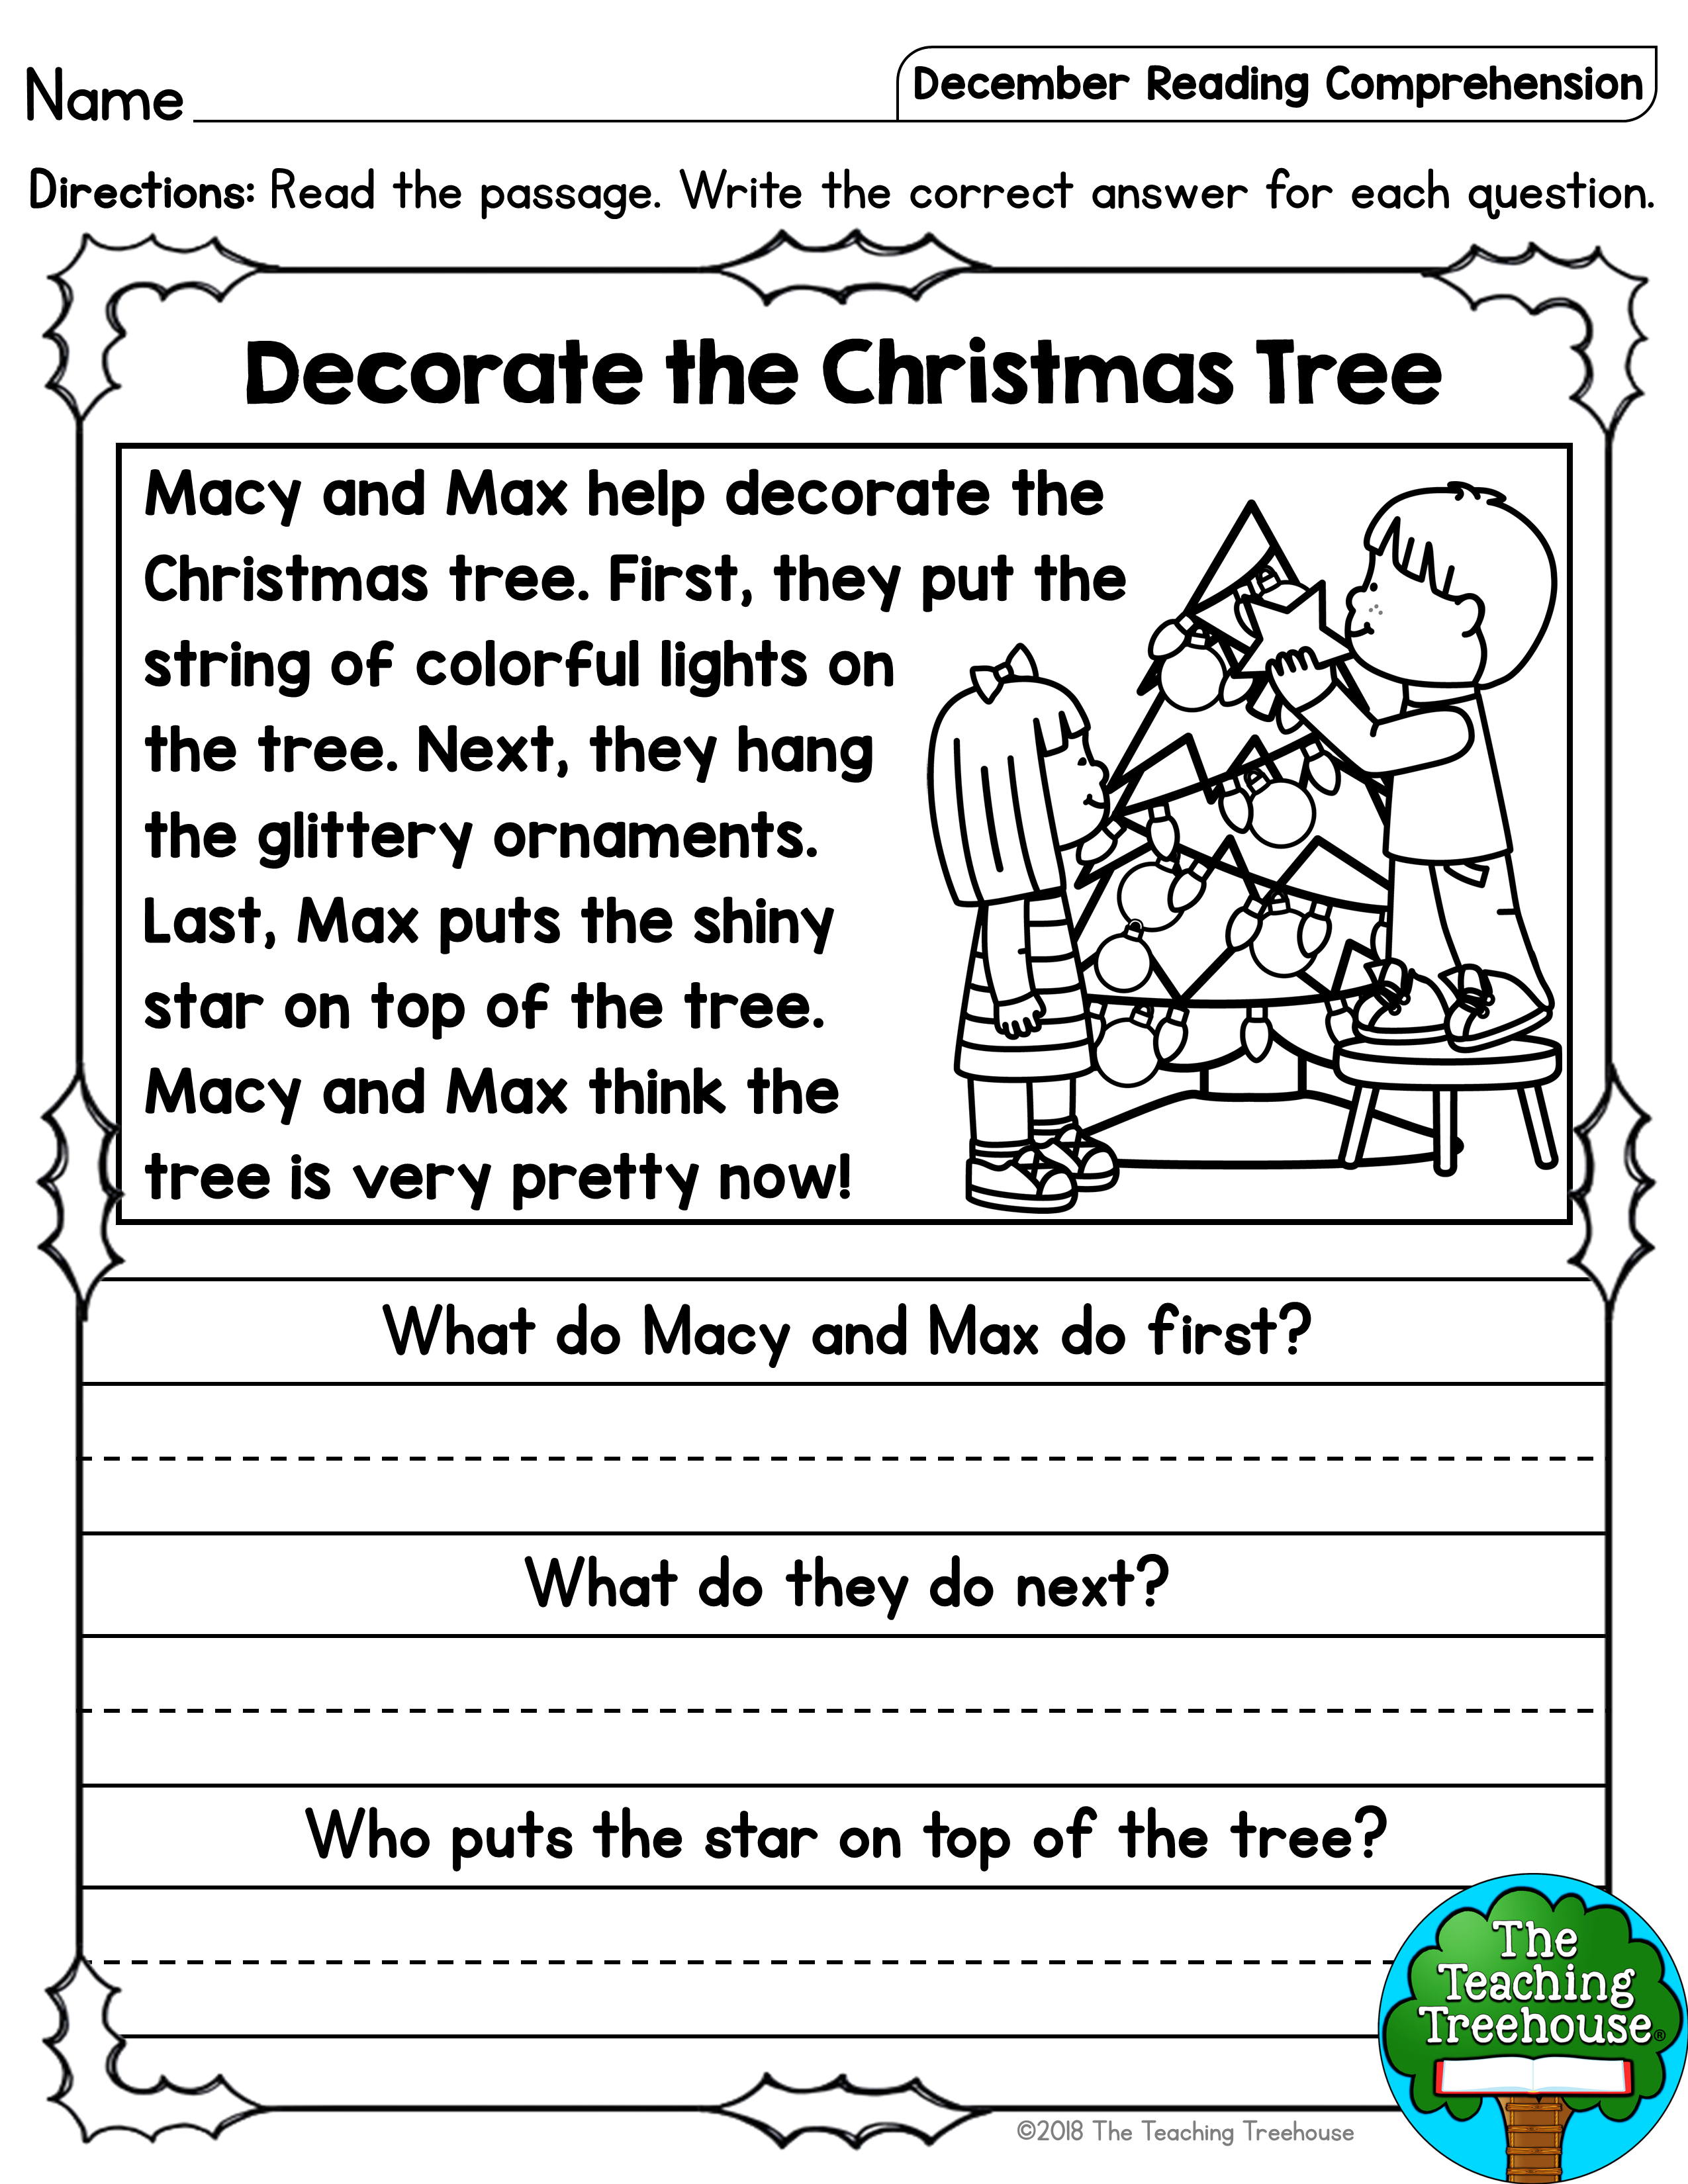 December Reading Comprehension Passages For Kindergarten And